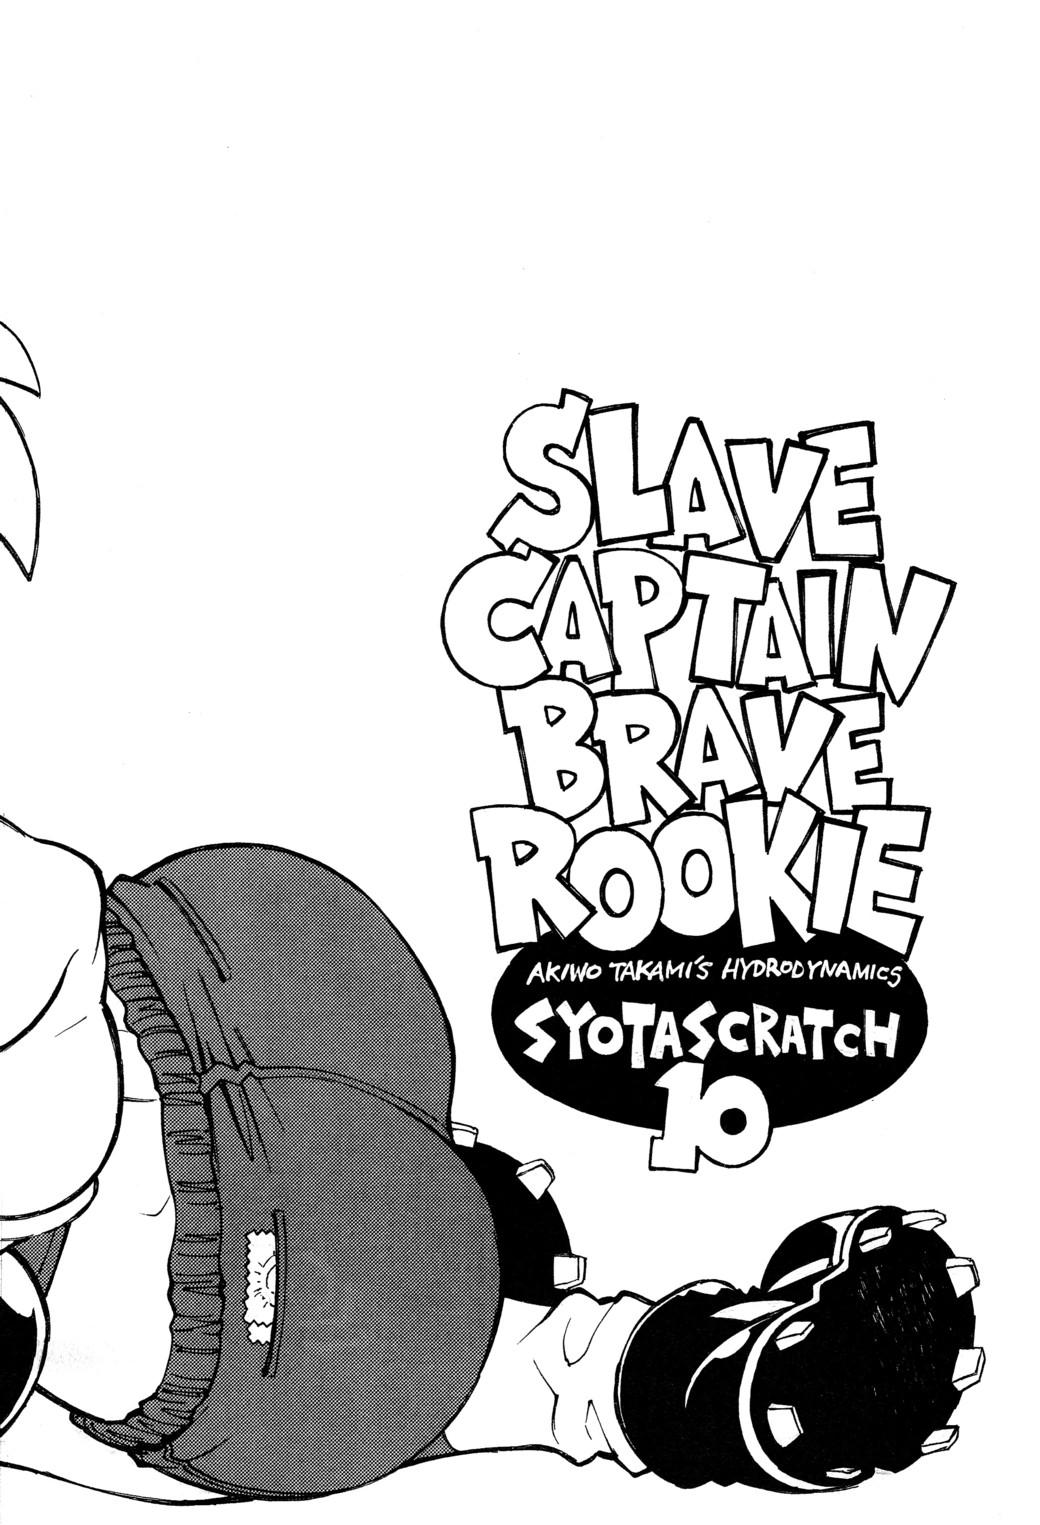 Slave Captain Brave Rookie 2